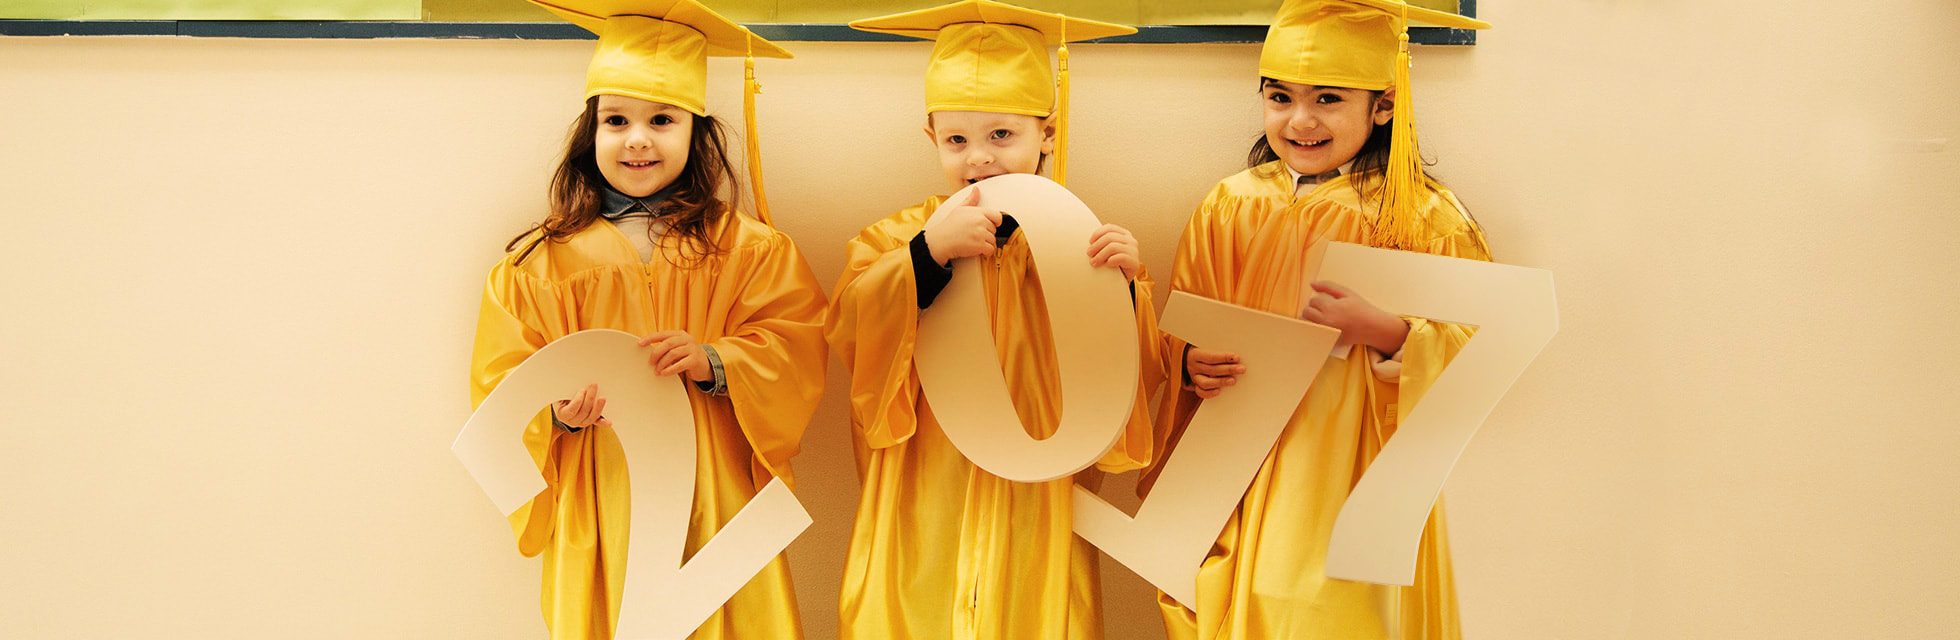 Image 8 2 - Kindergarten Graduation Cap And Gown